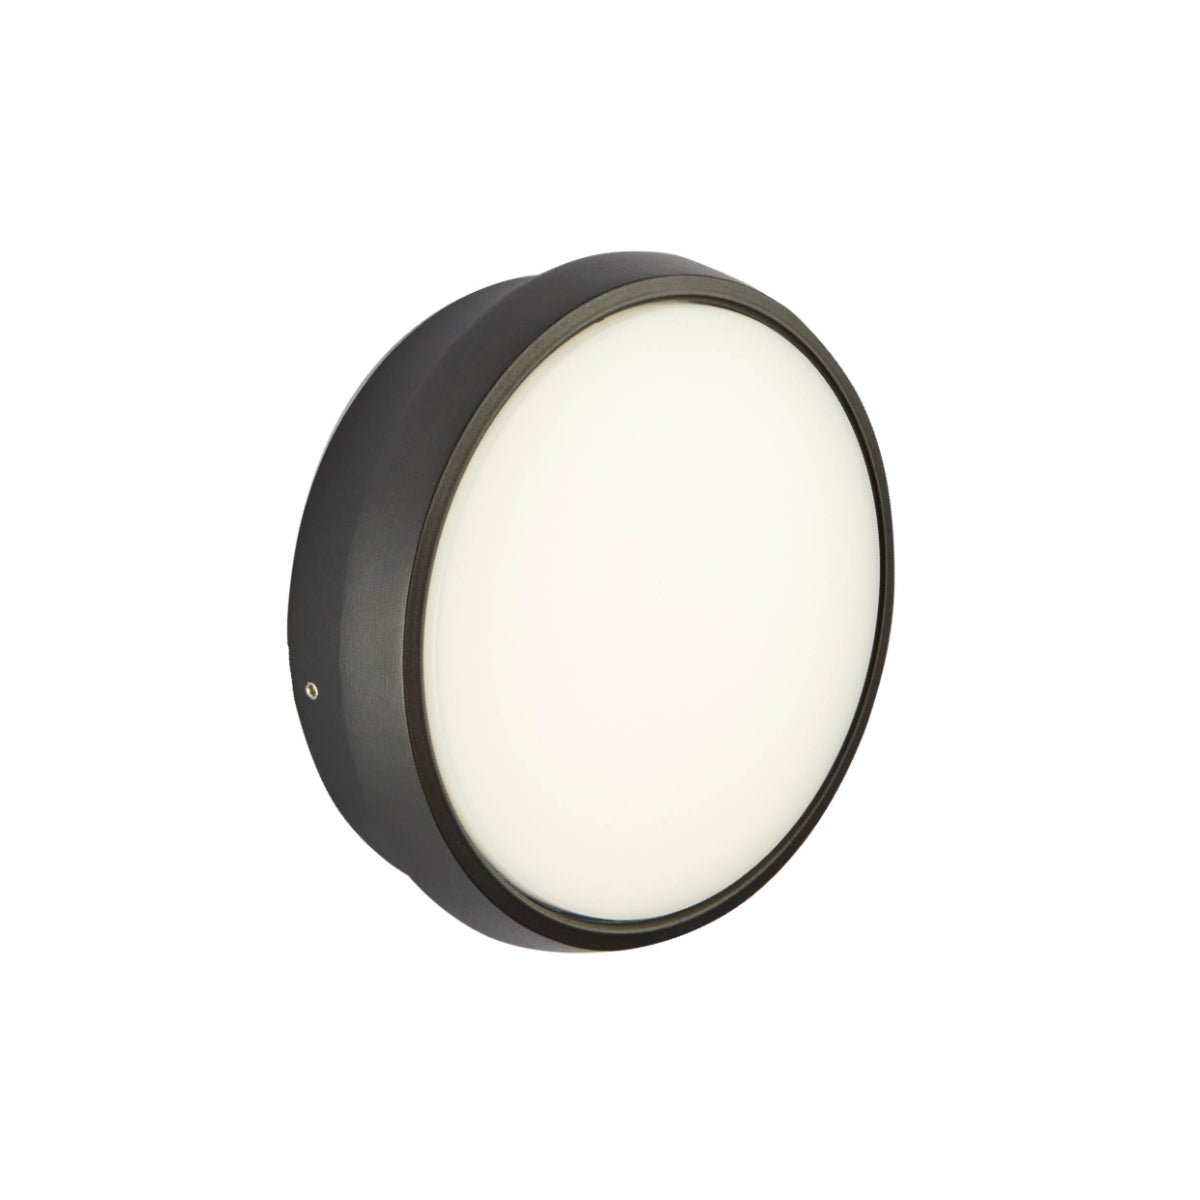 Main image of Black Ring Moonlight Outdoor Modern LED Wall Light | TEKLED 183-03318